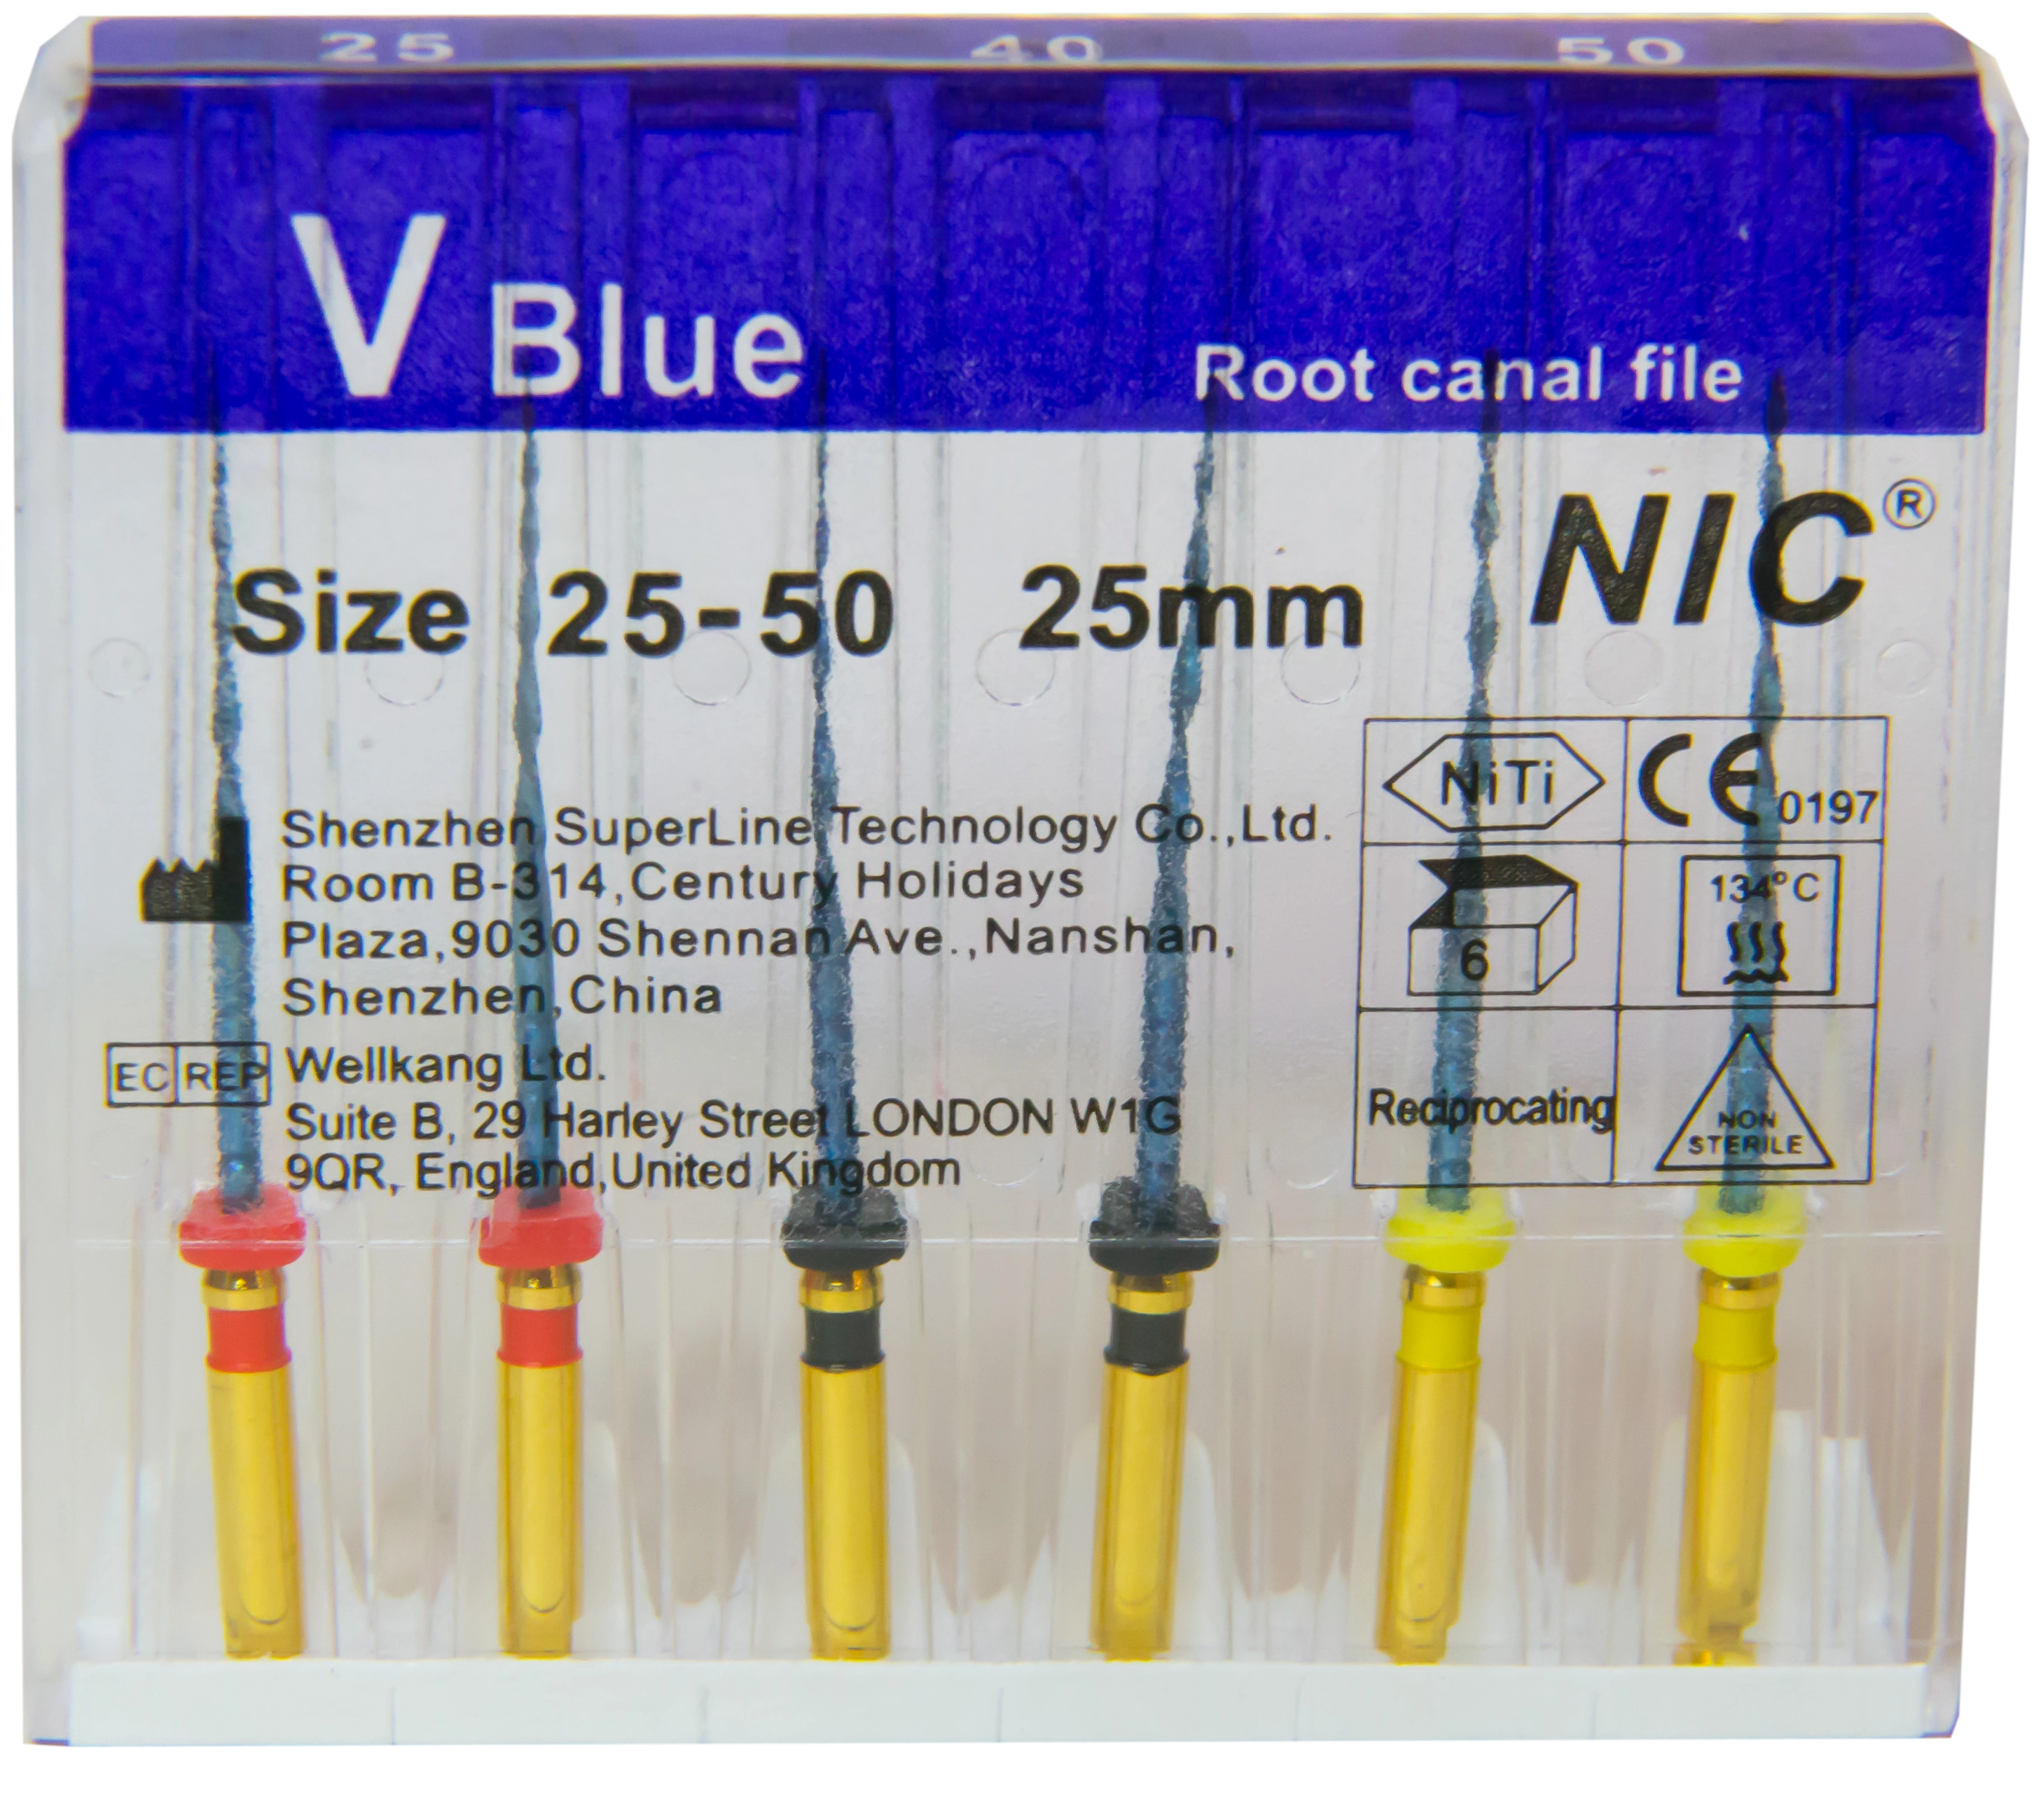 V-blue (Reciproc blue) 25 mm, 6 db gépi tű, 40%-kal növelt rugalmasság - több méretben